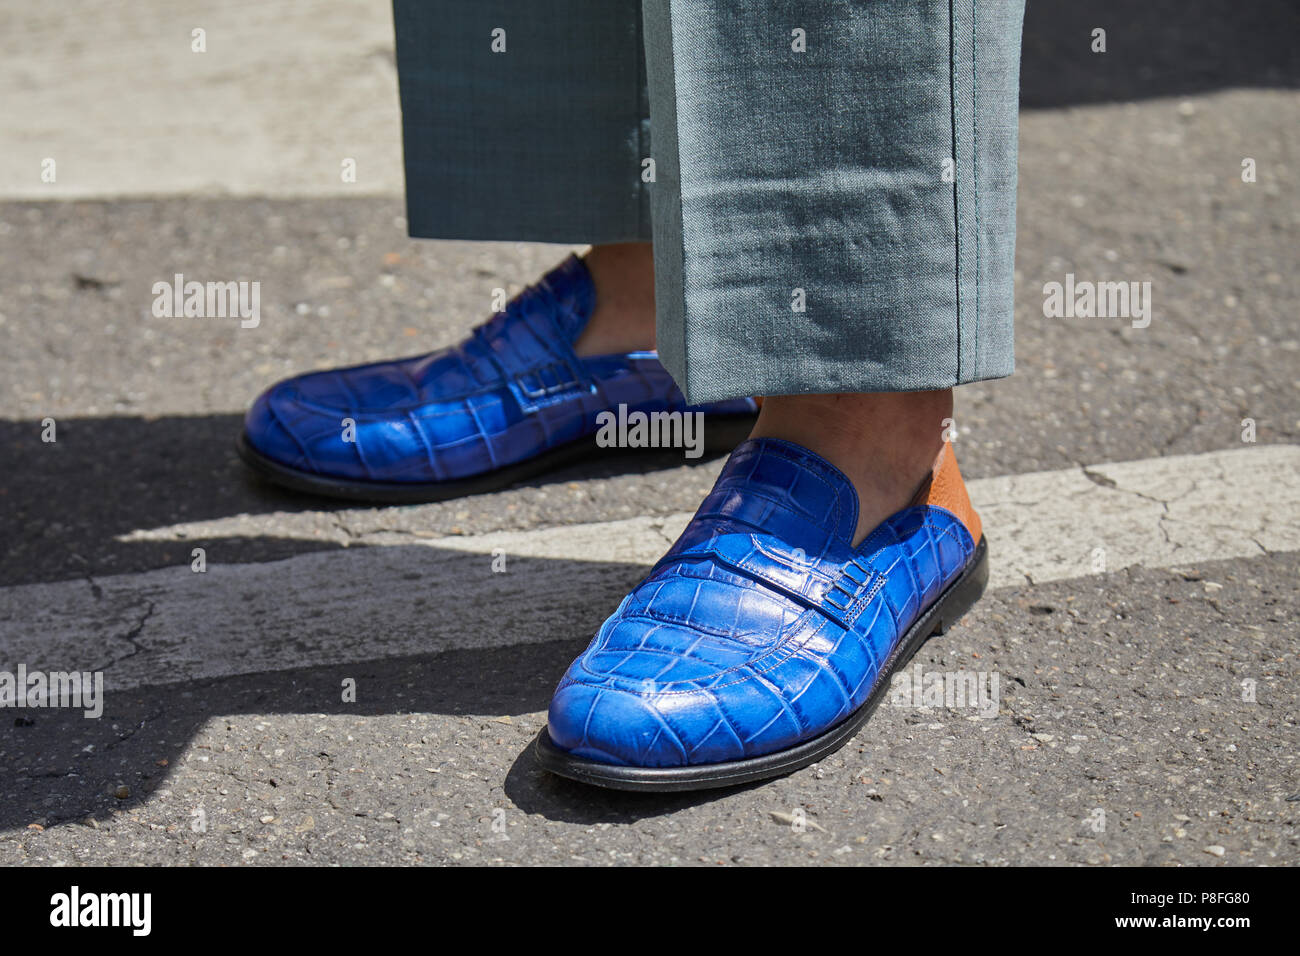 Milán - 16 de junio: el hombre con zapatos de cuero de azul antes de Marni moda, Style de la Semana de la moda de Milán 16 de